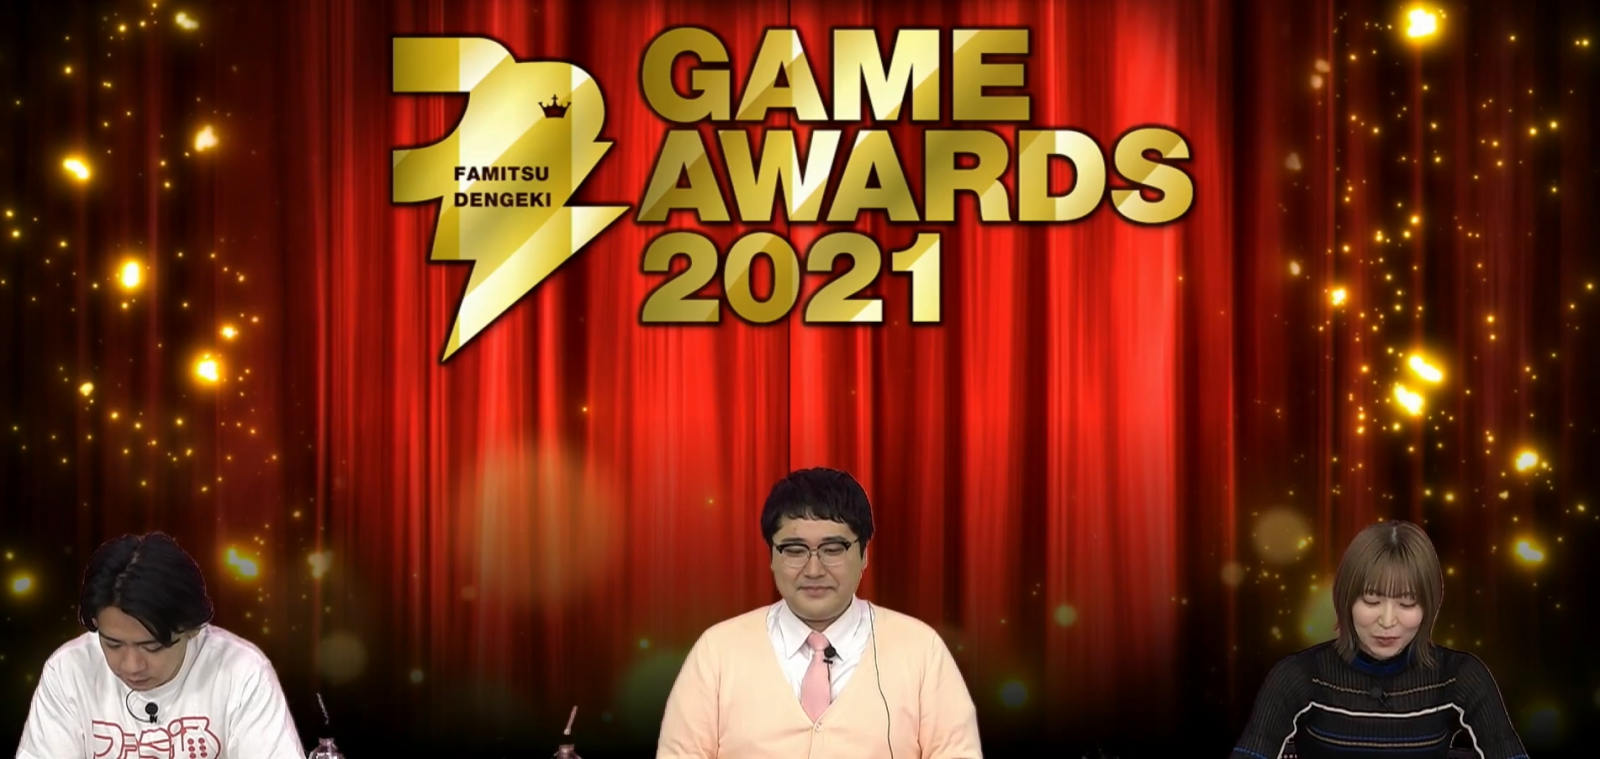 《怪物猎人 崛起》荣获年度游戏大奖，“Fami通・电击游戏大赏2021”奖项汇总